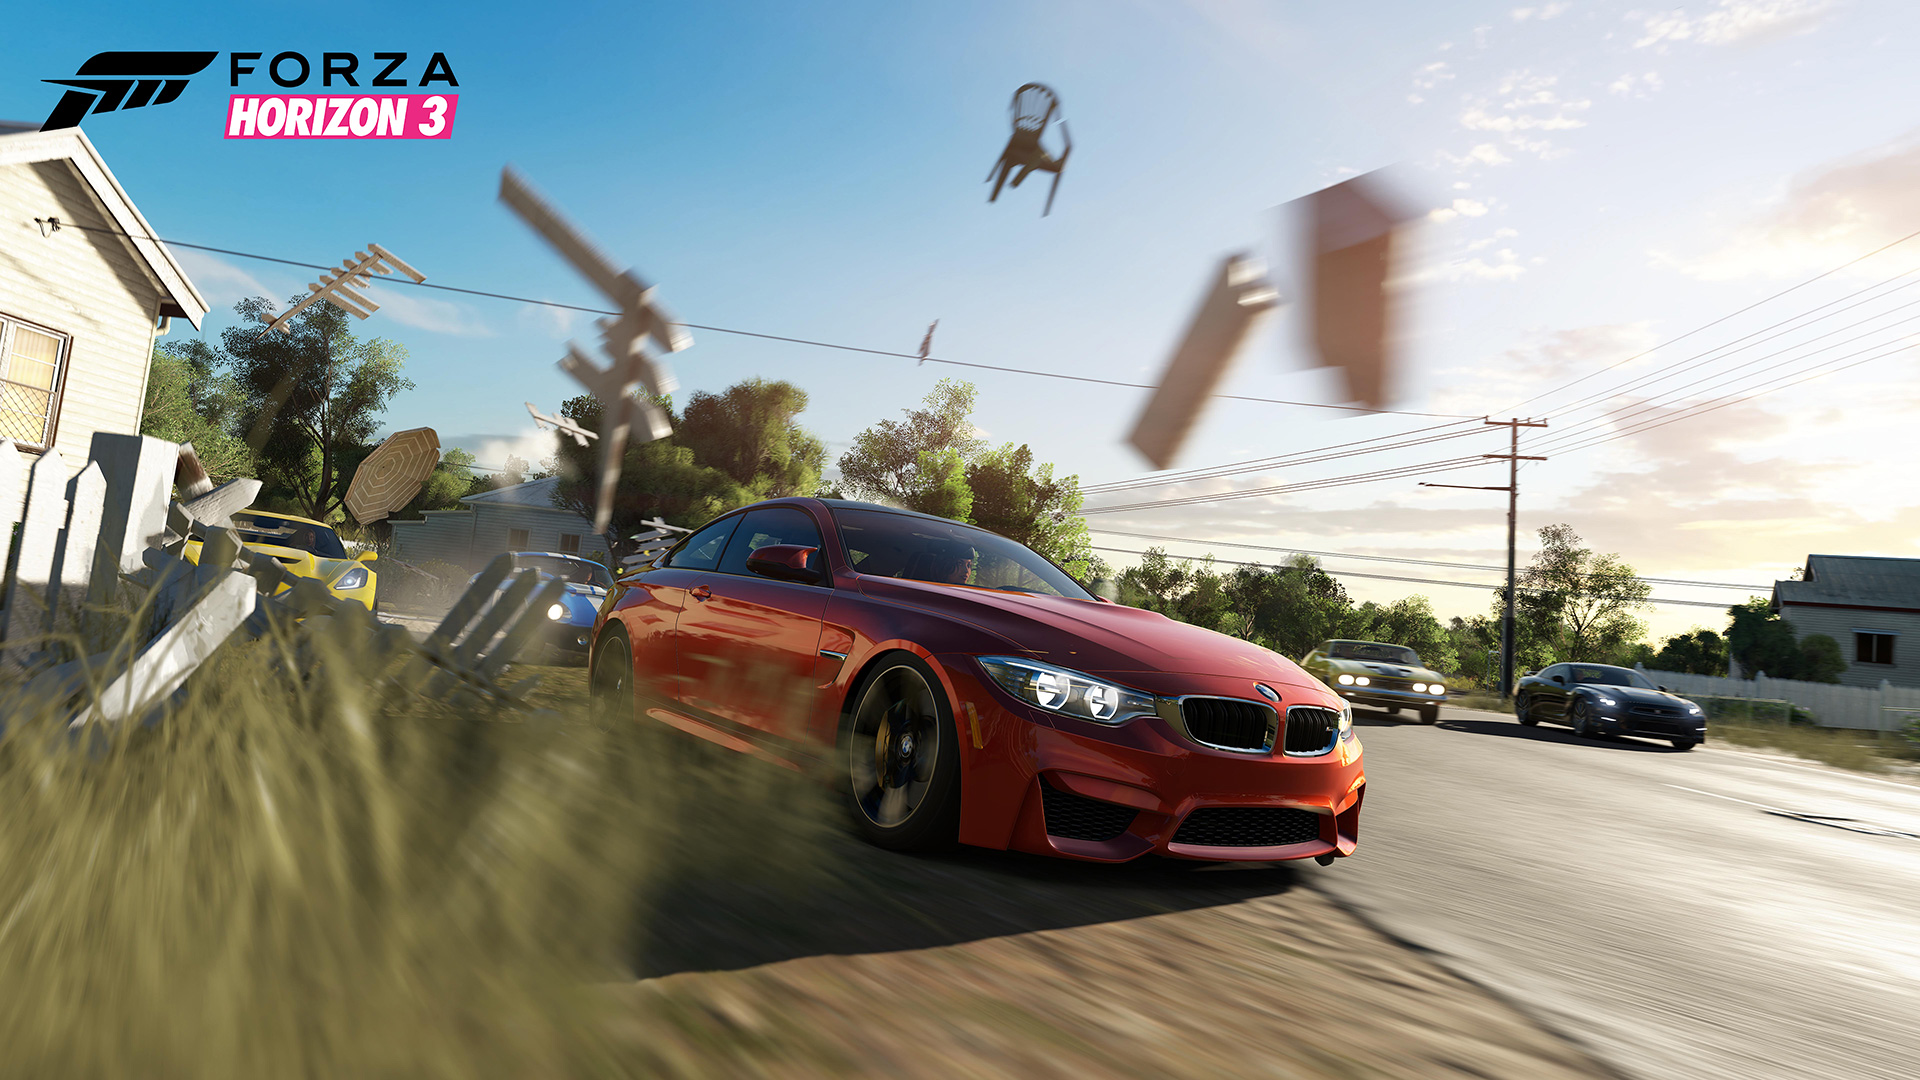 Ya disponible la demo de Forza Horizon 3, en Windows 10!!! Y sus especificaciones mínimas